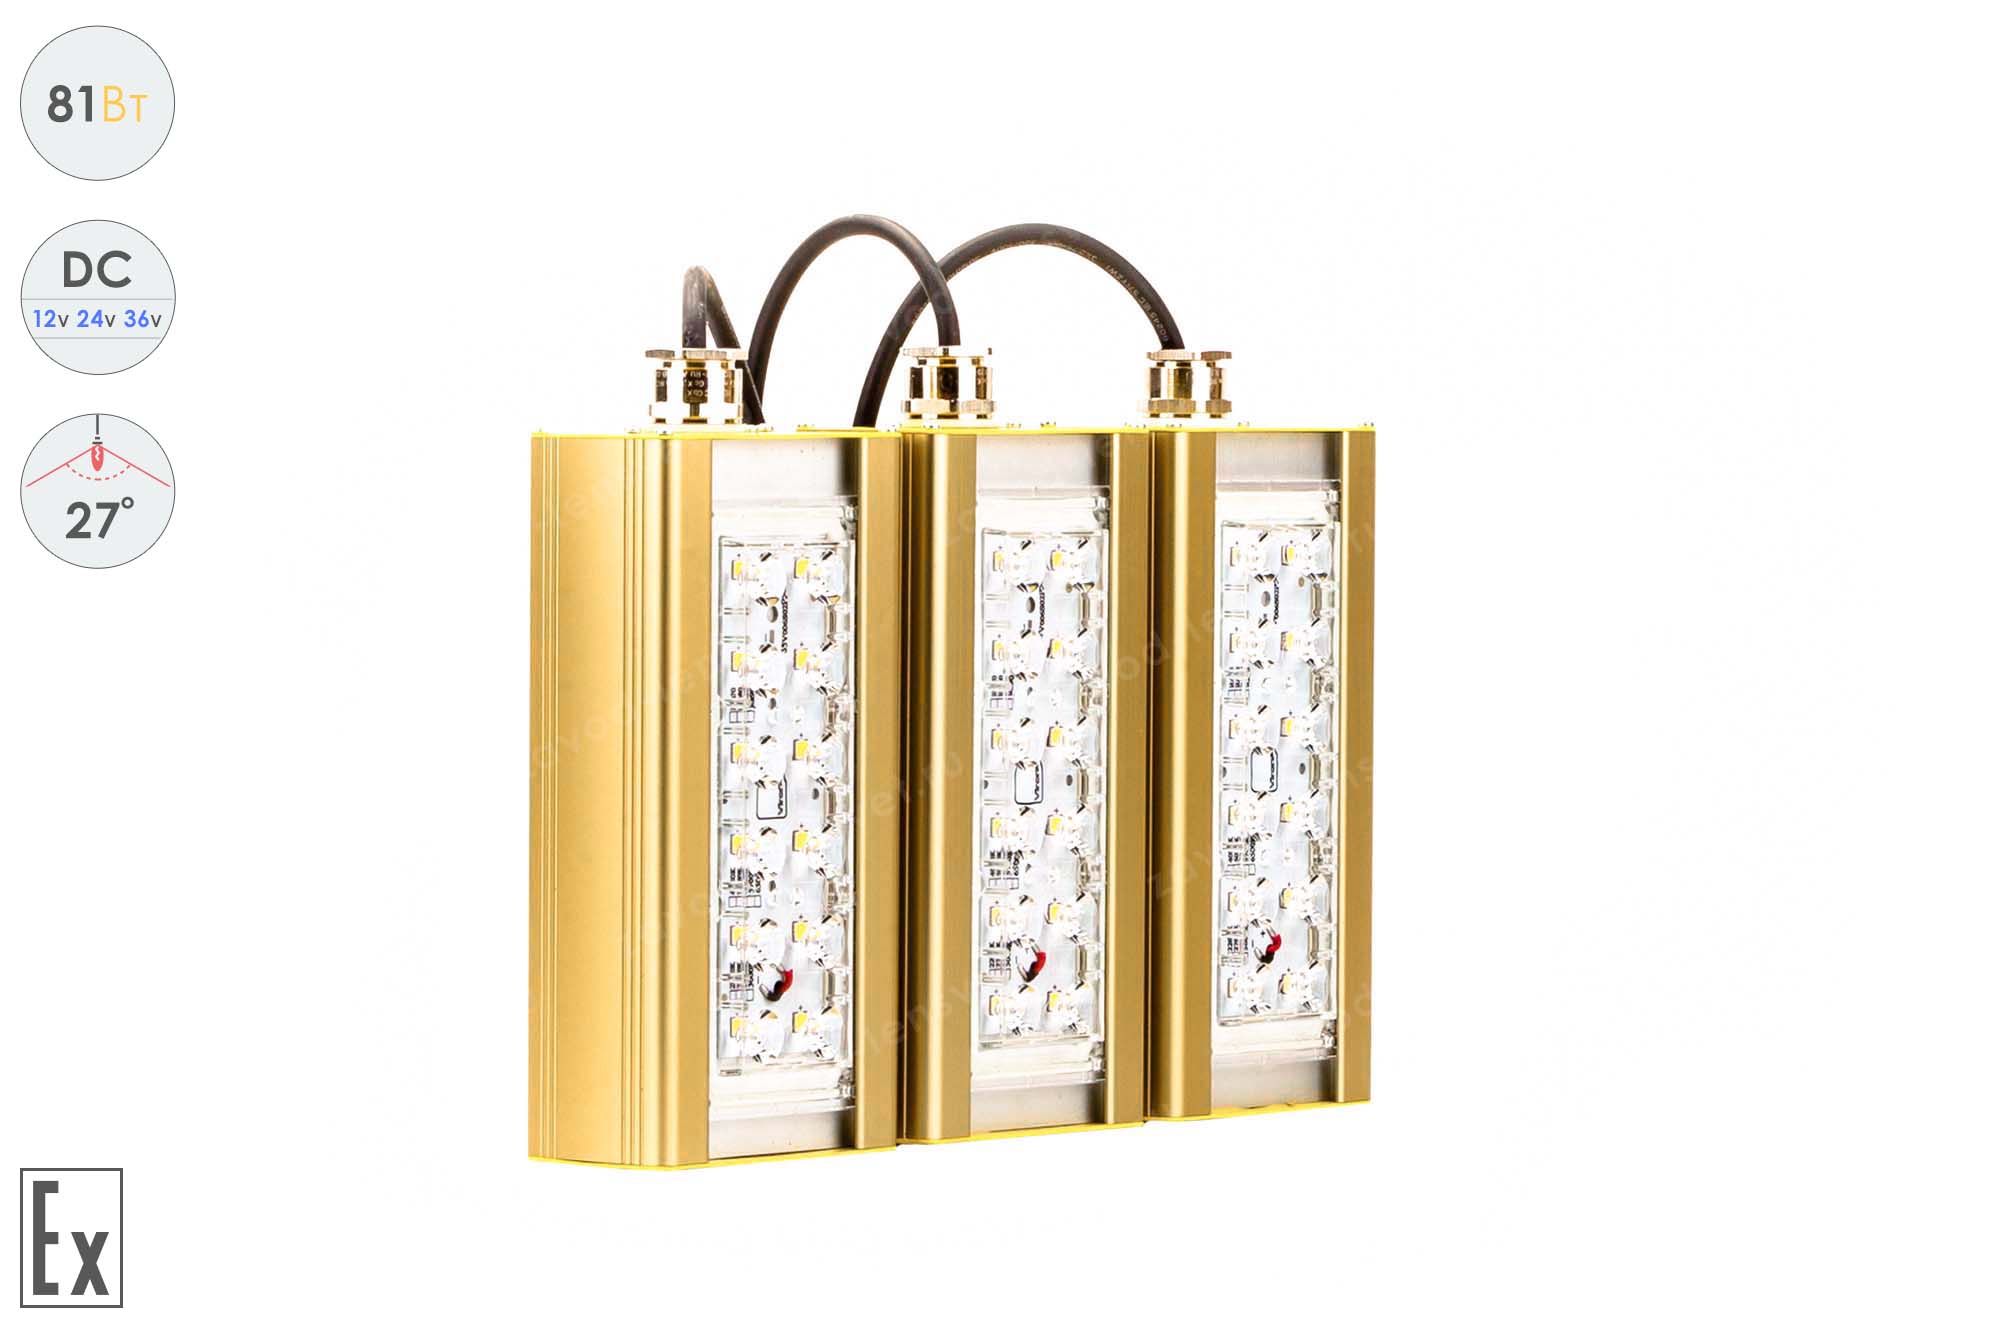 Низковольтный светодиодный светильник Прожектор Взрывозащищенный GOLD, консоль K-3 , 81 Вт, 27° 